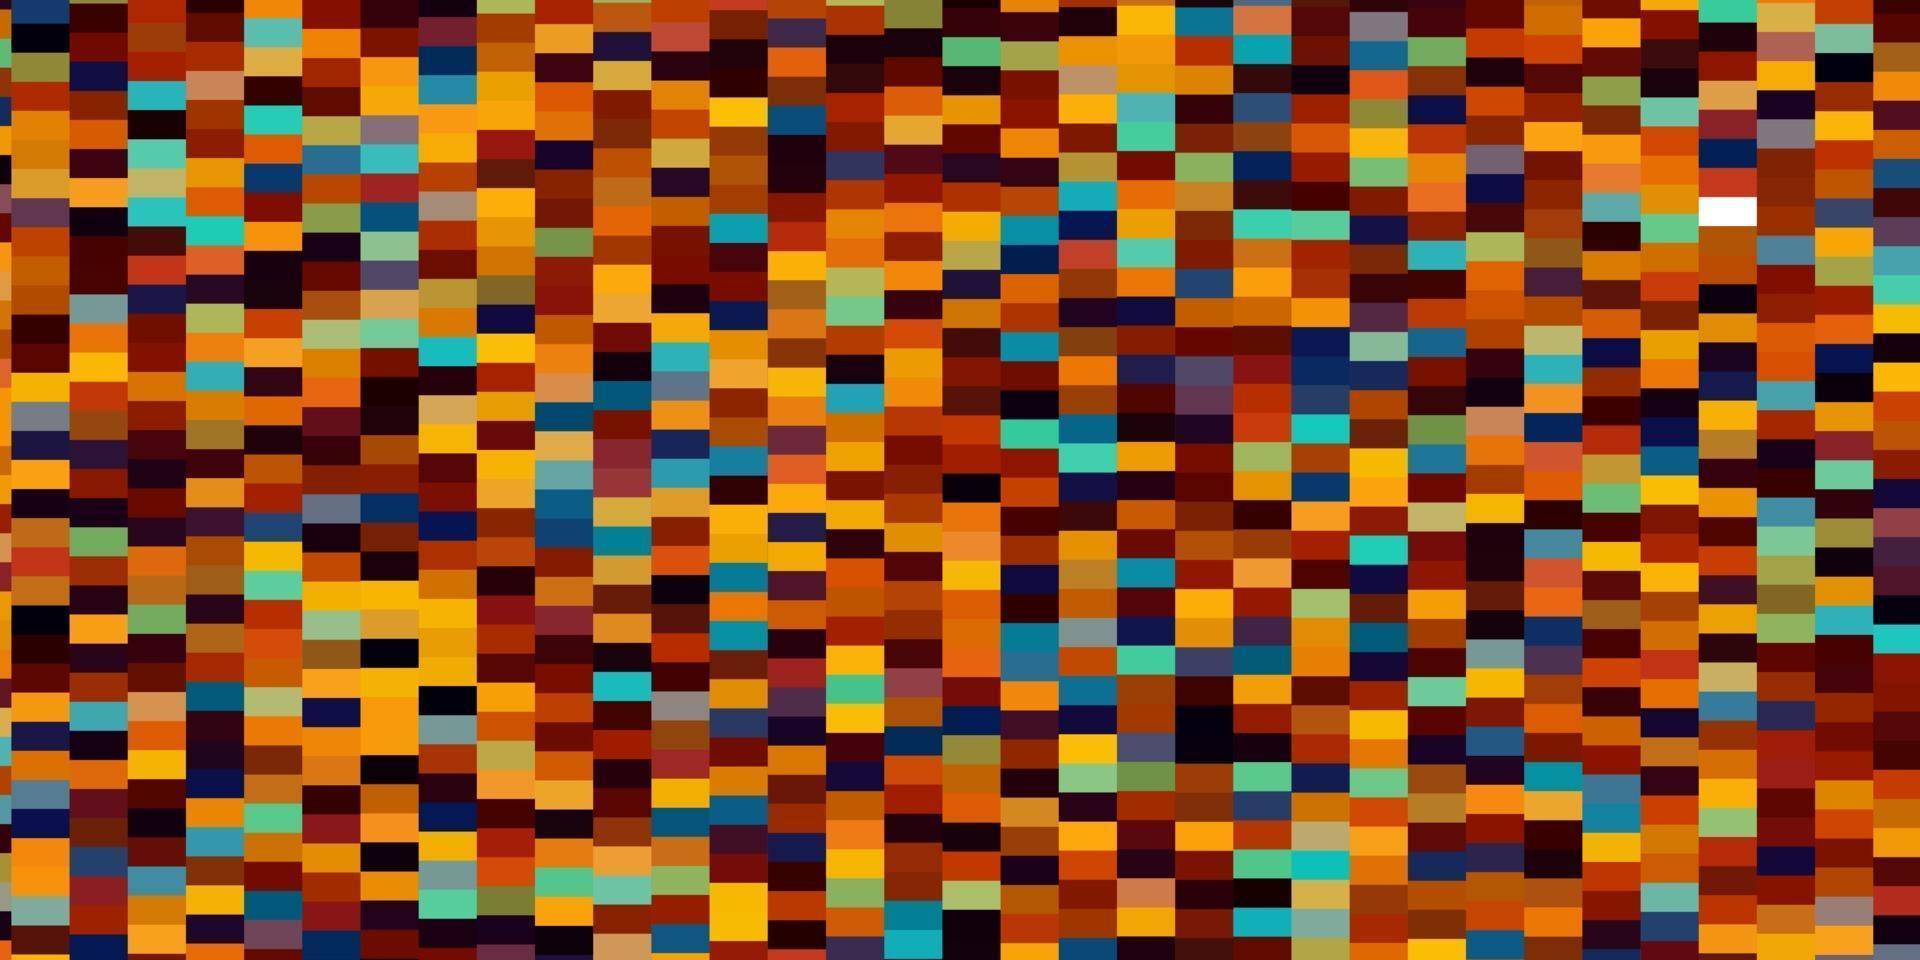 sfondo astratto colorato vettoriale con gradiente